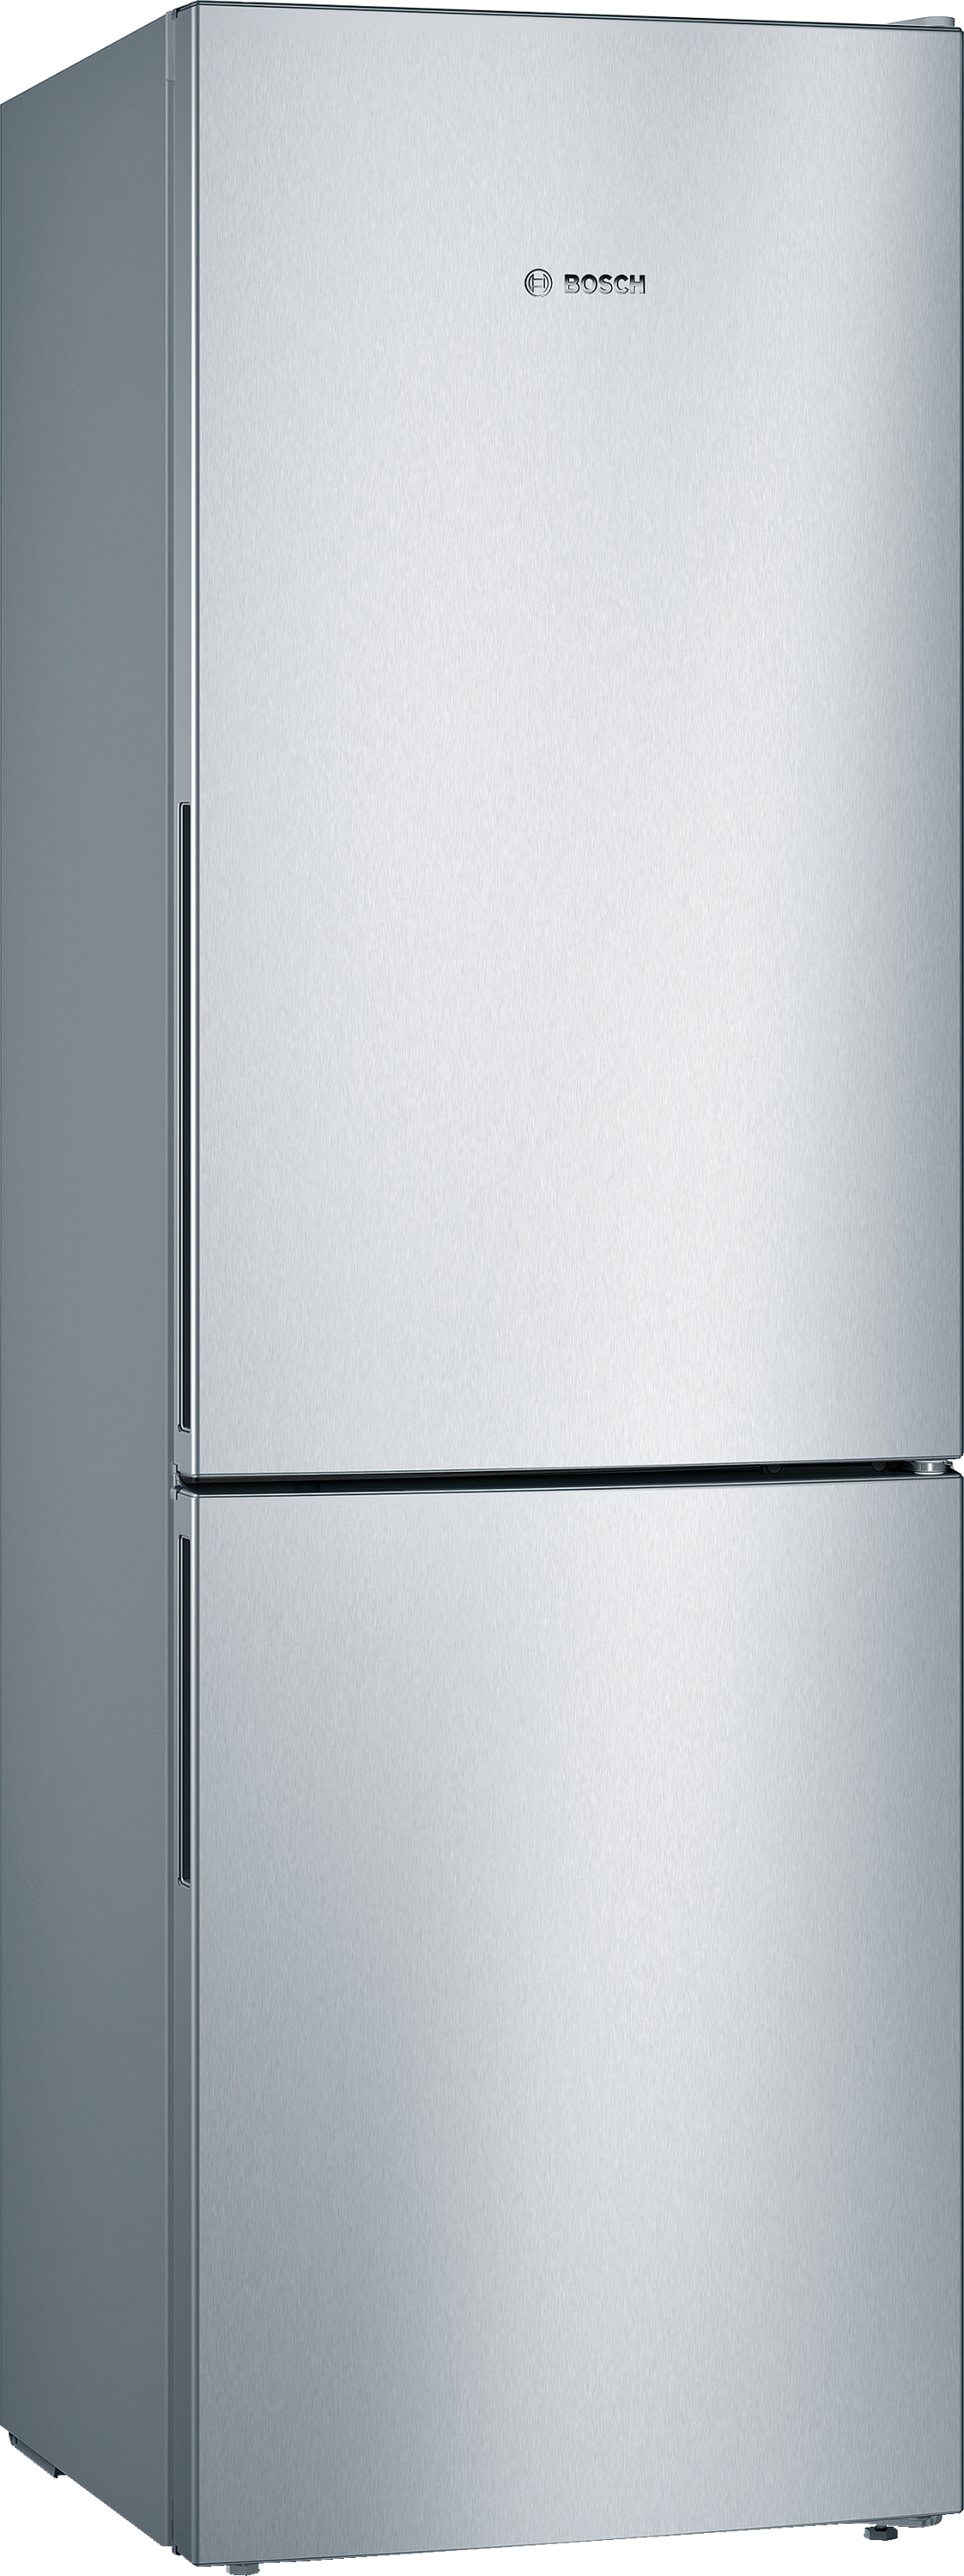 KGV36VLEAS Combină frigorifică independentă 5 ANI GARANTIE, 186 x 60 cm, Inox Look. Clasa Energetica E